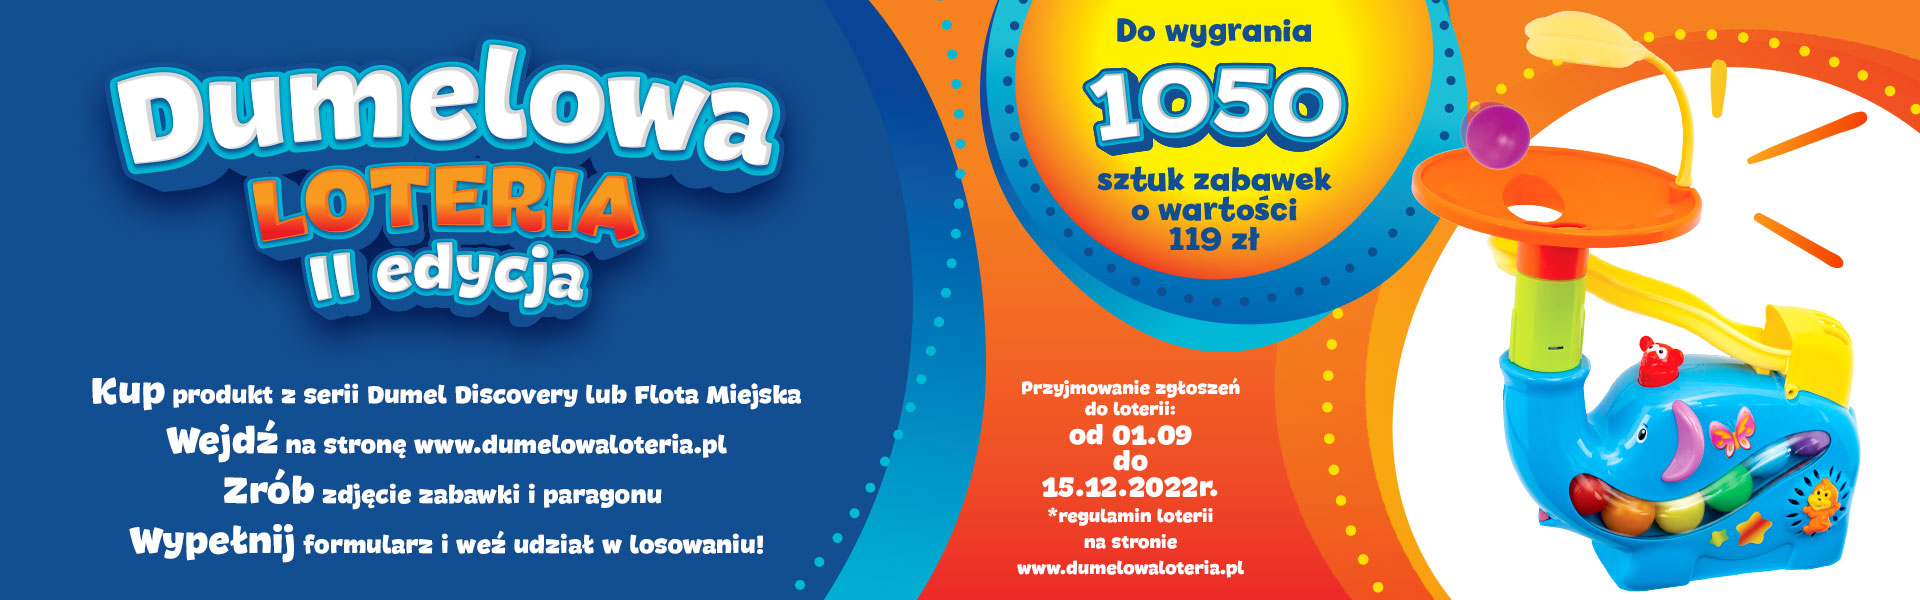 2022-1920x600-Dumelowa-Loteria